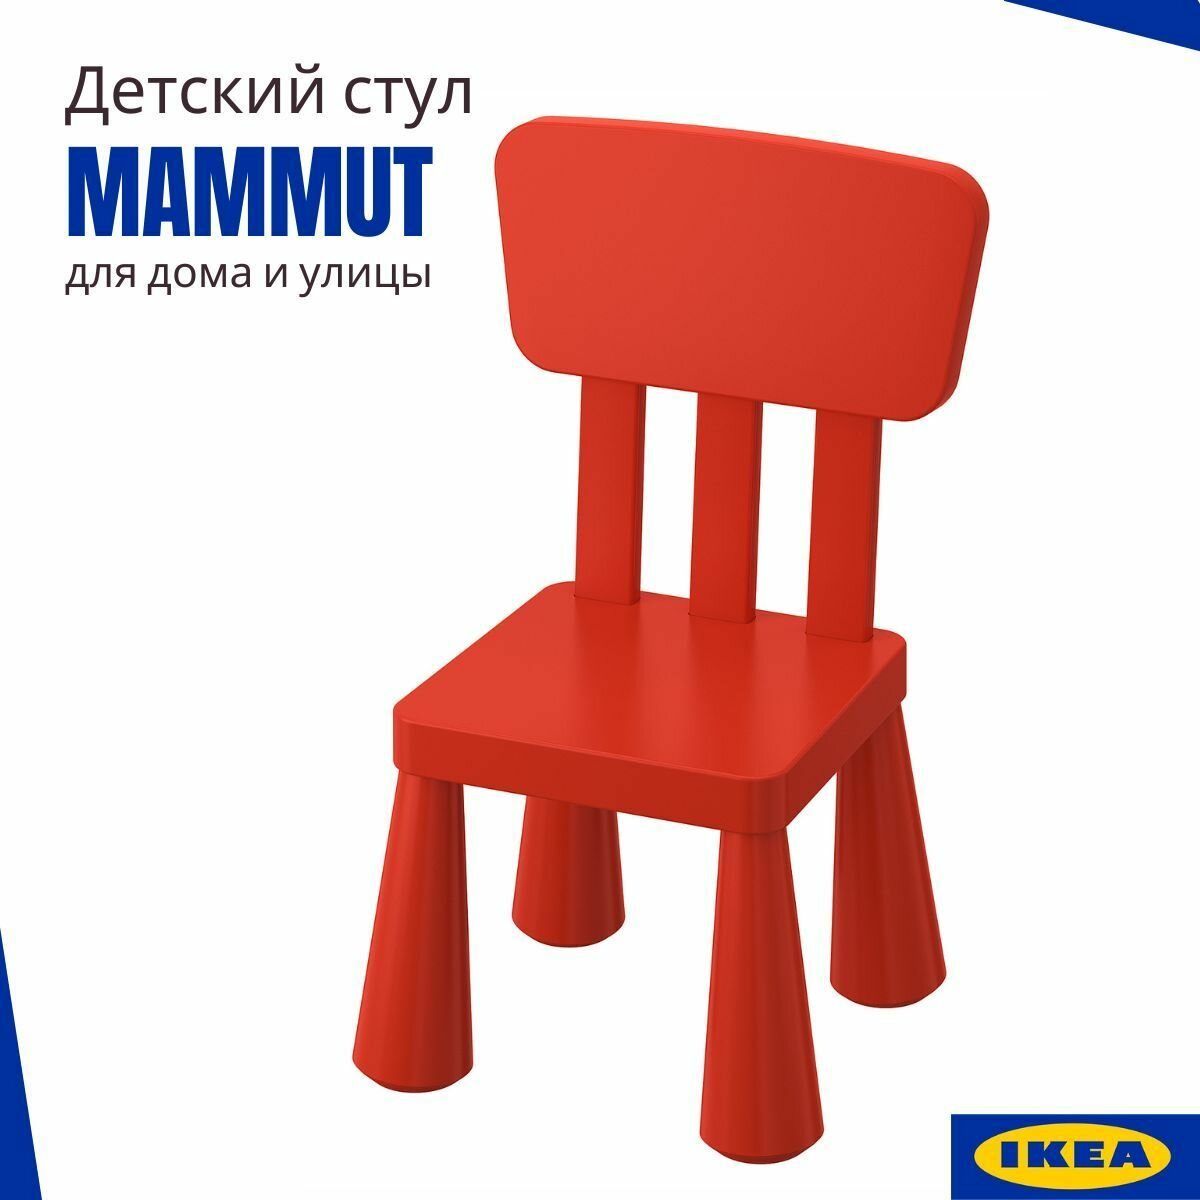 Детский стул икеа маммут, пластиковый стул для ребенка, красный 35x30 см